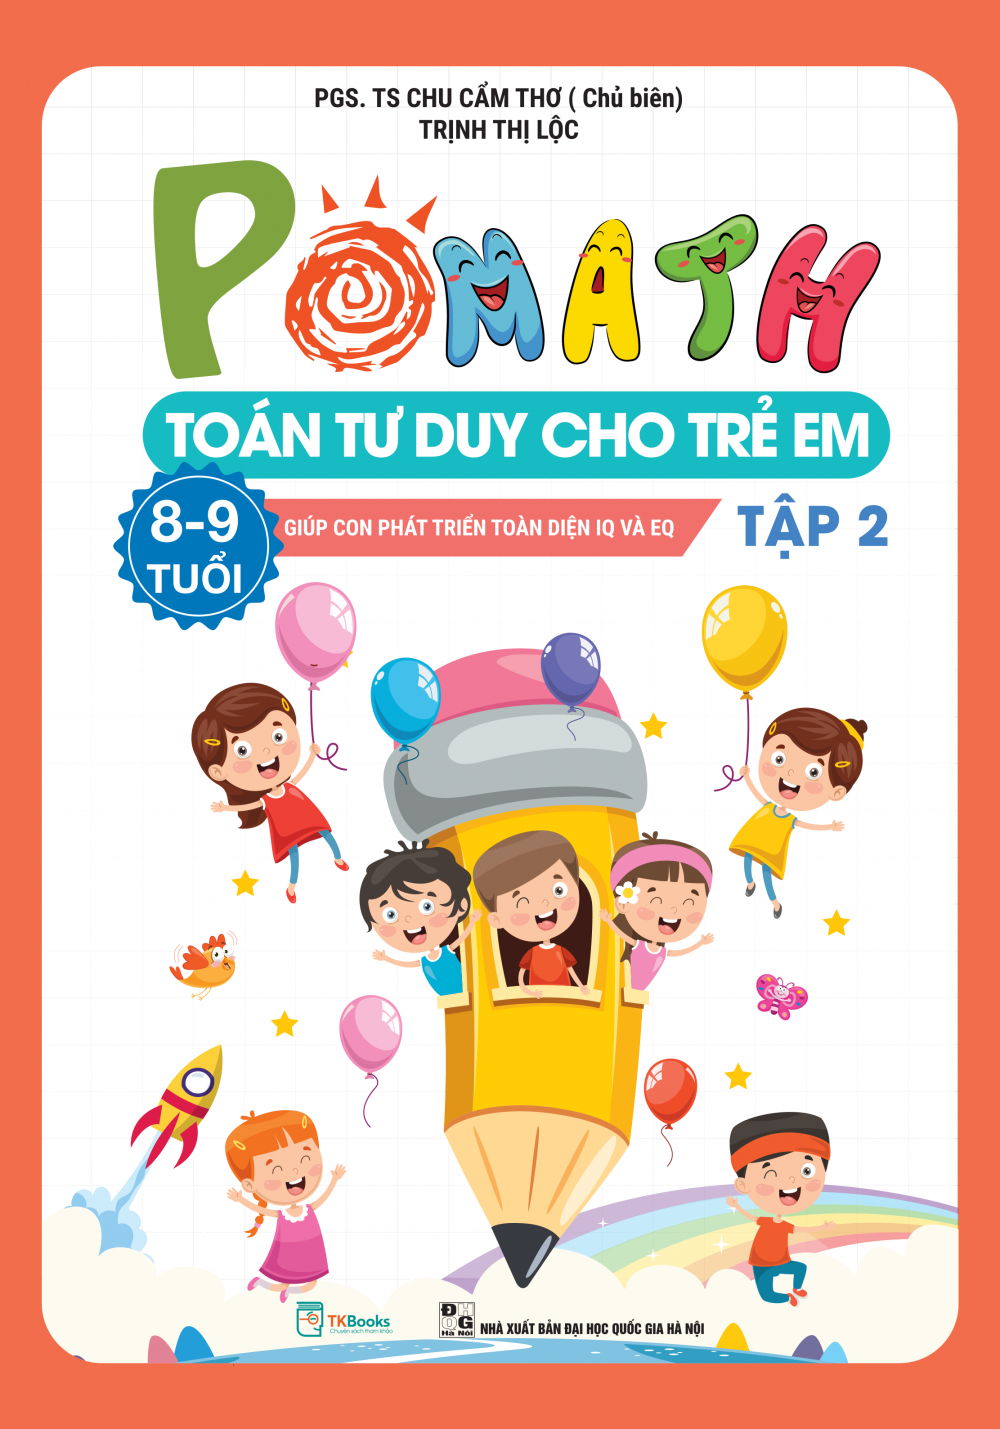 POMath – Toán tư duy cho trẻ em 8 – 9 tuổi - Tập 2